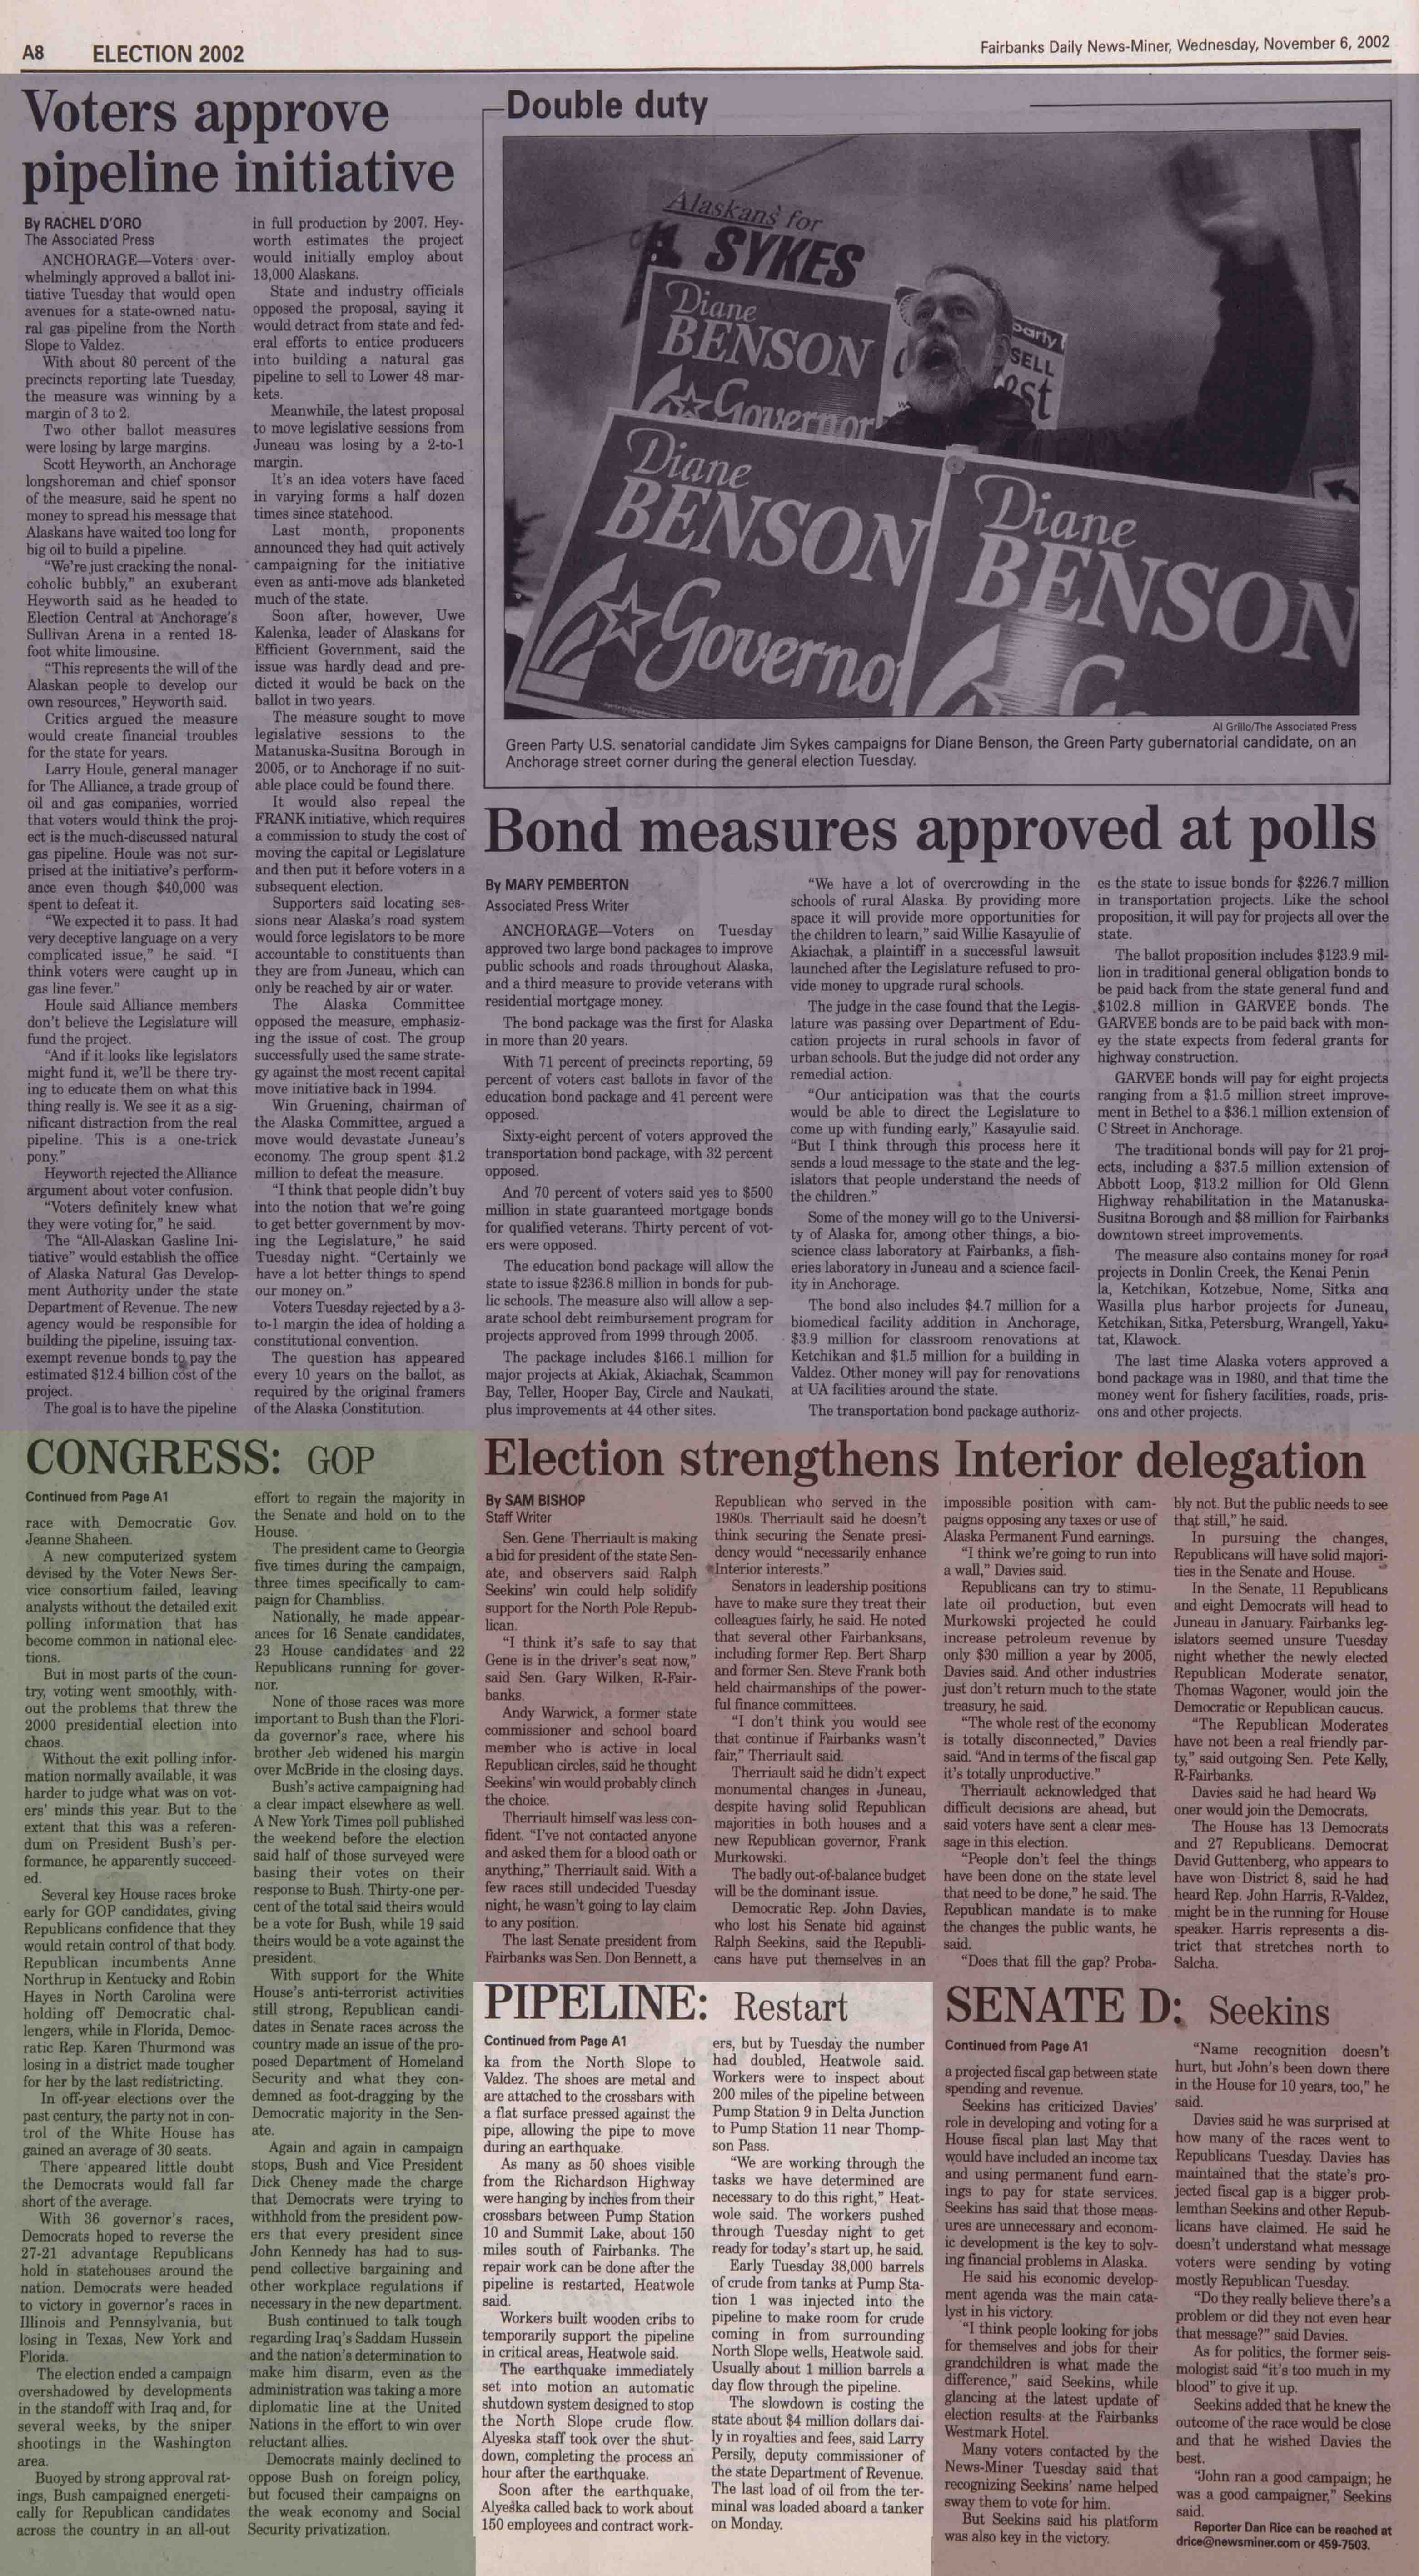 2002 November 6, Fairbanks Daily News-Miner (pg 8)